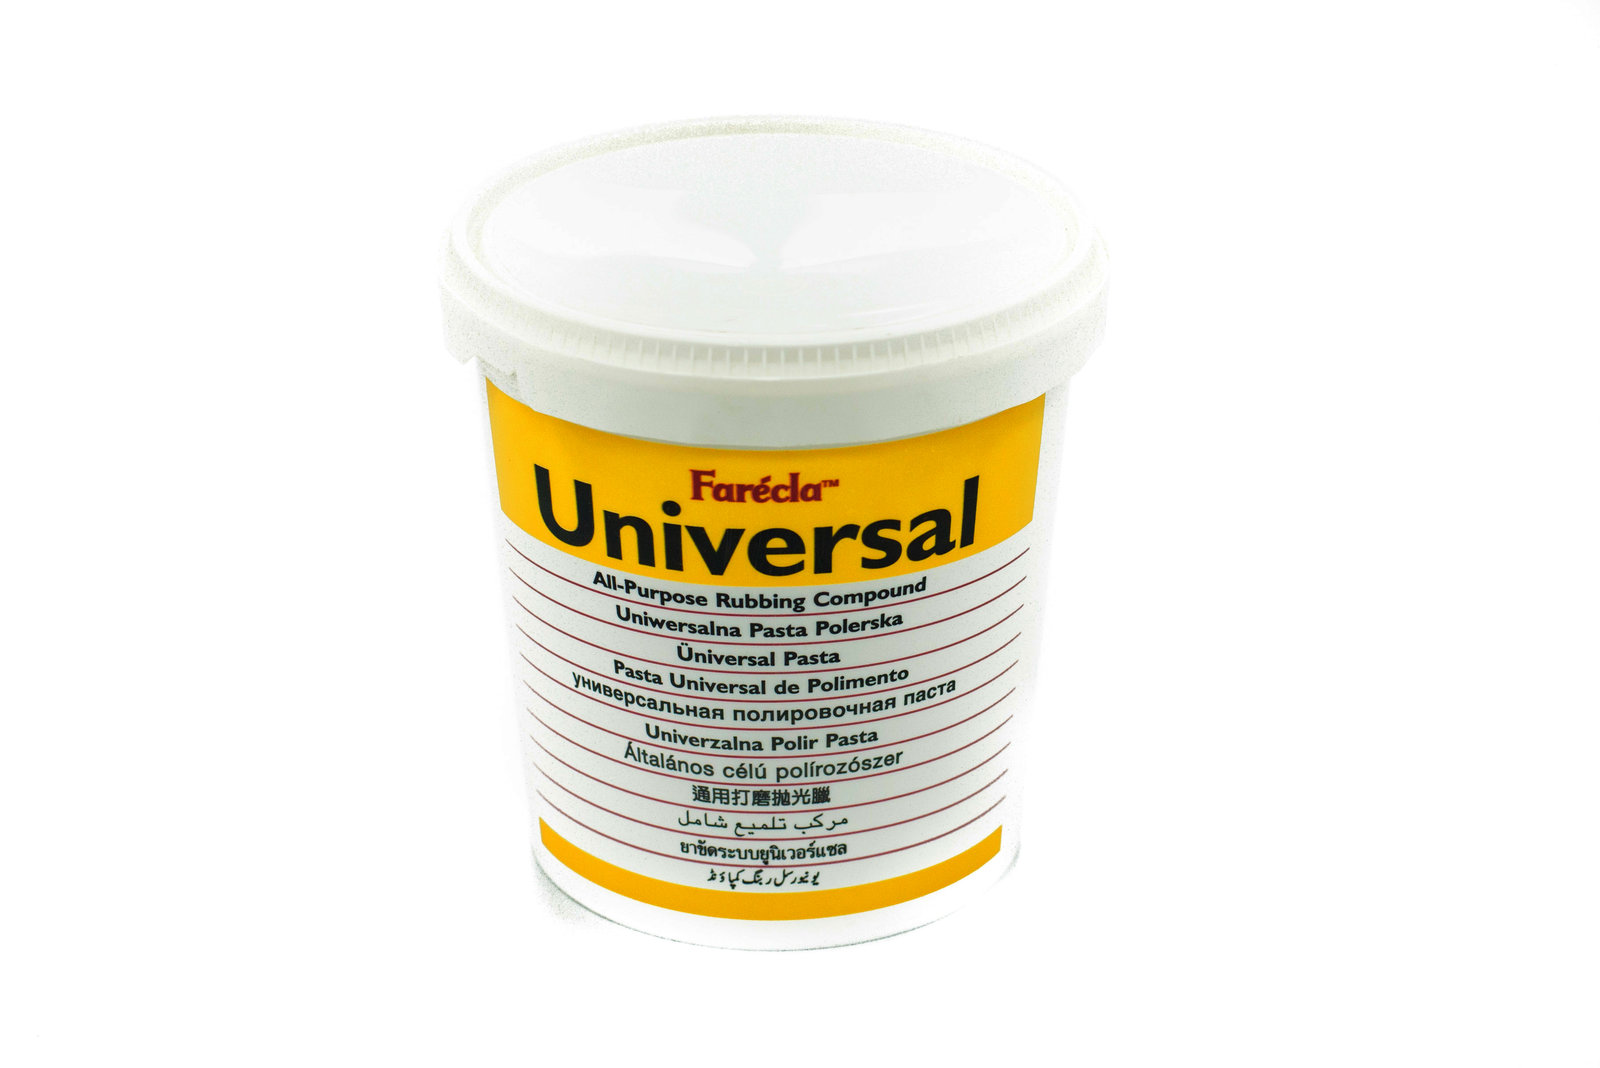 Farecla Universal Универсальная полировальная, 1,0 кг